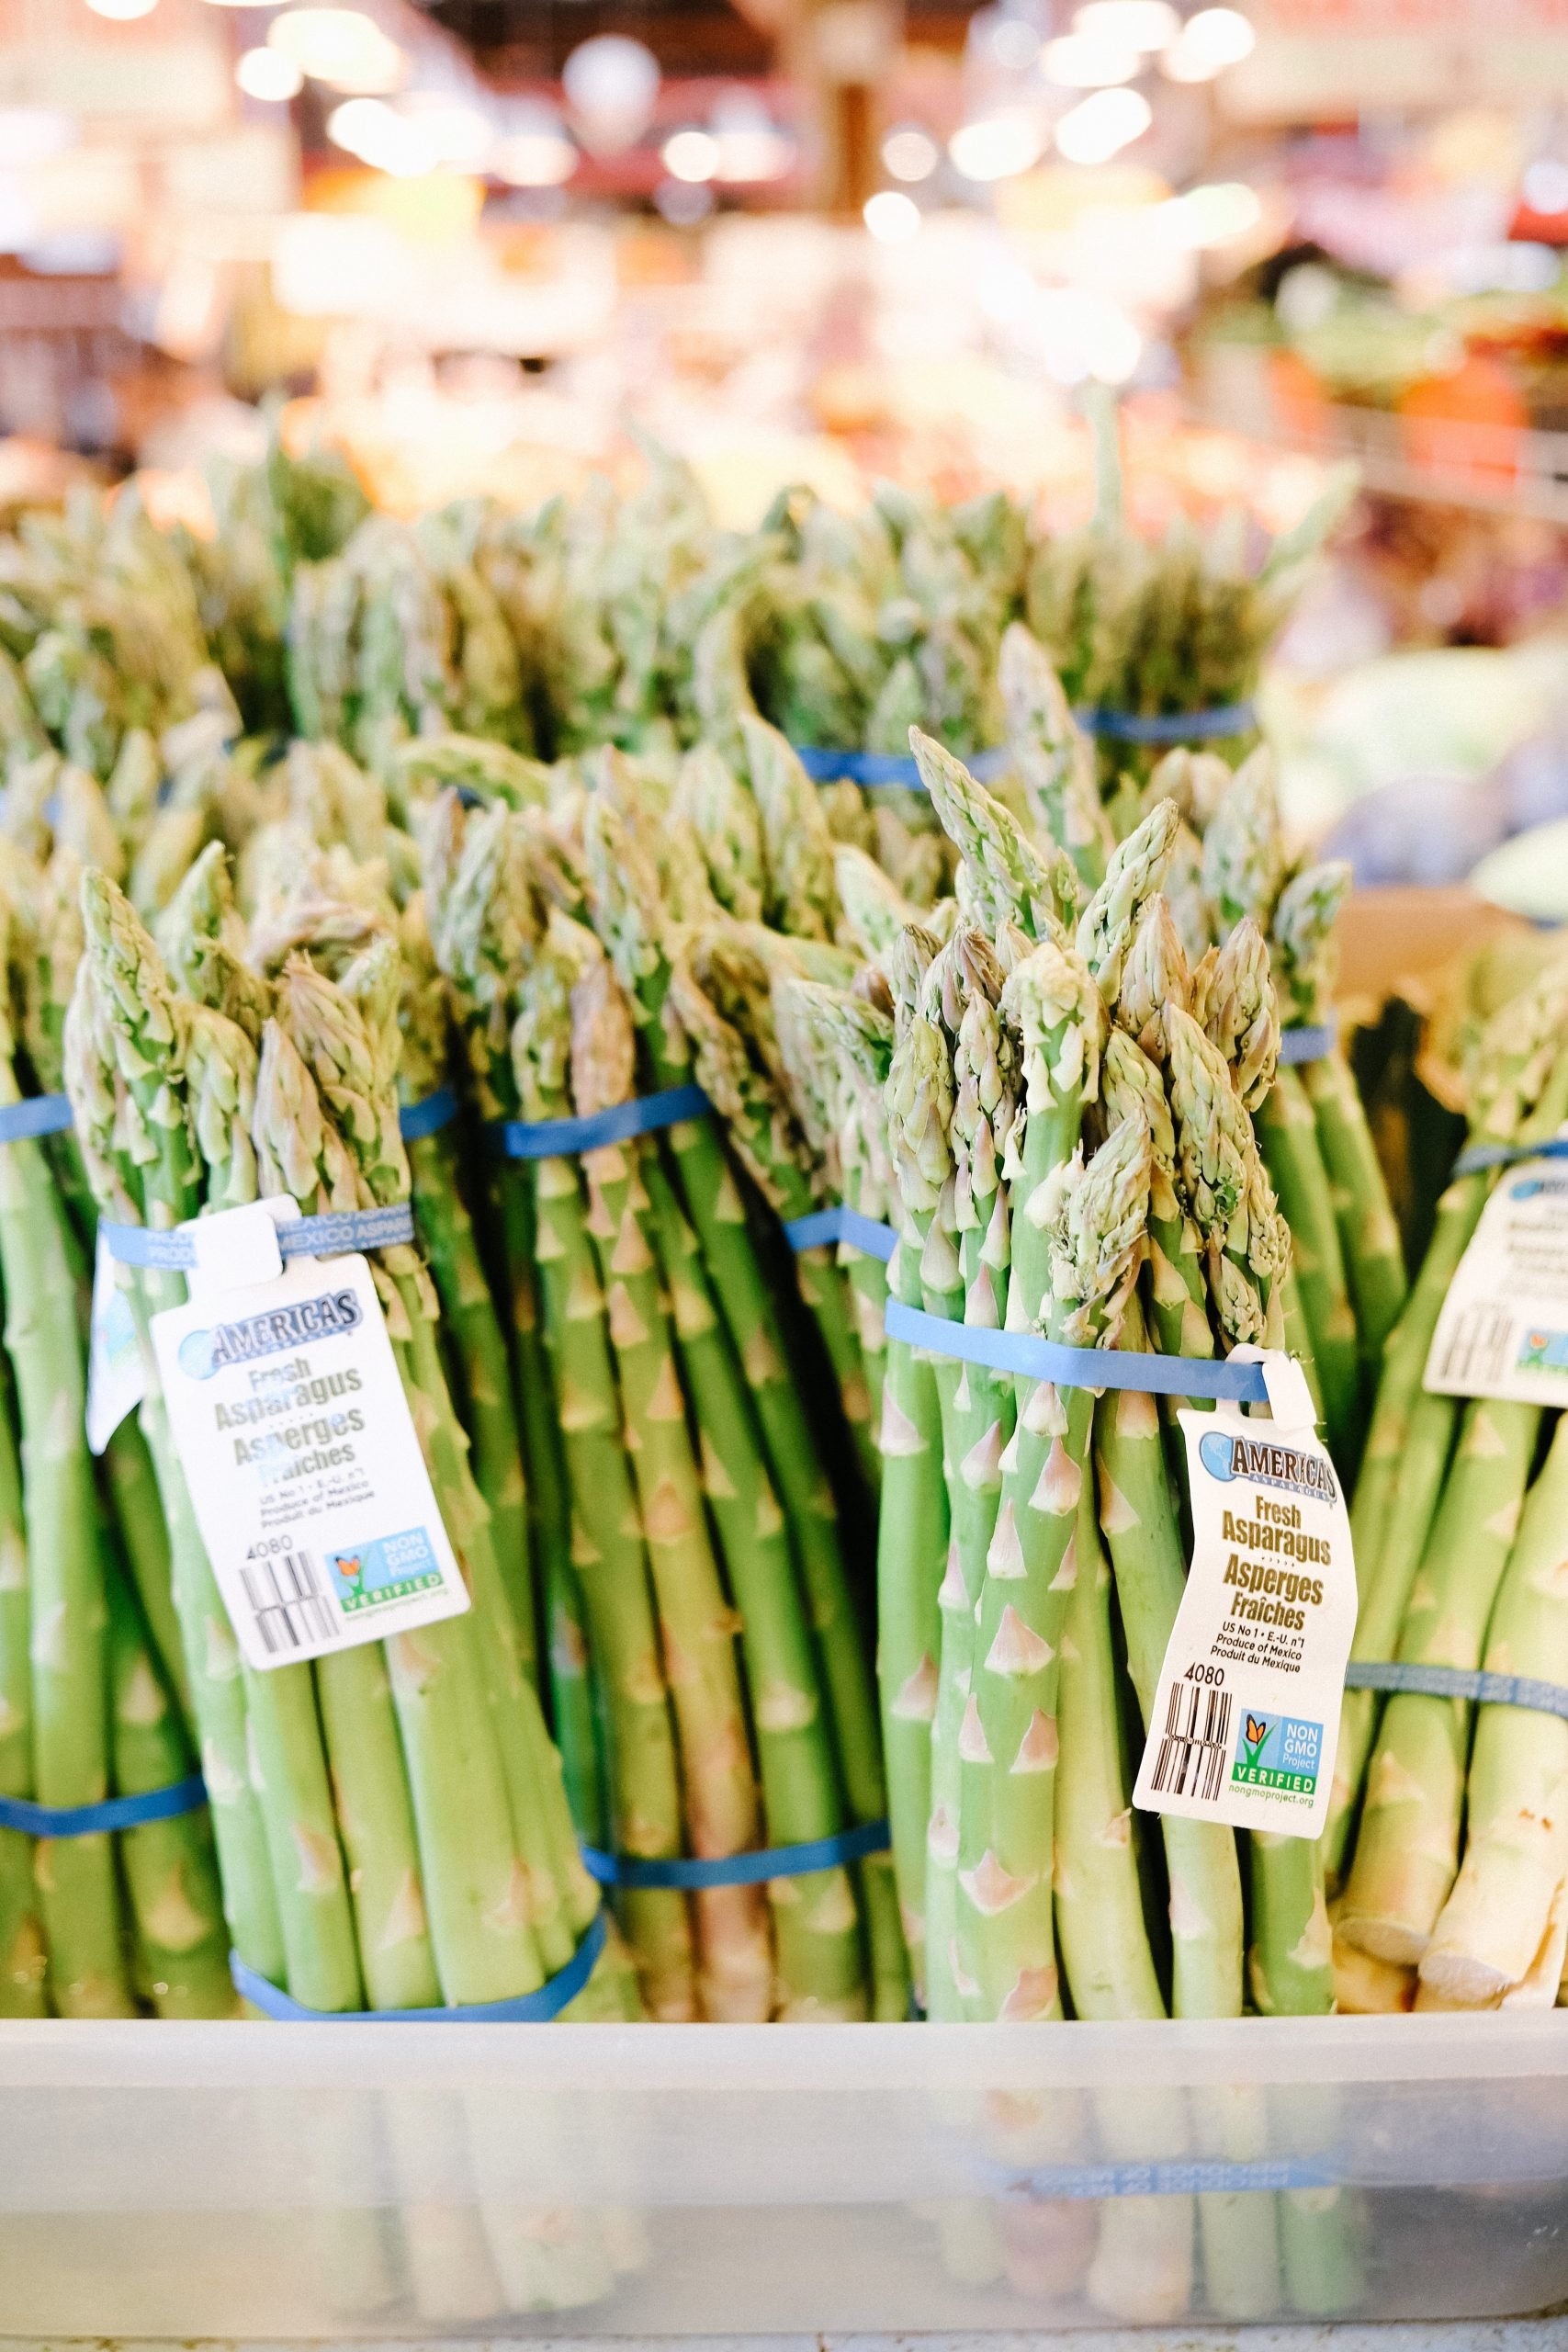 How Big Do Plants Asparagus Get?